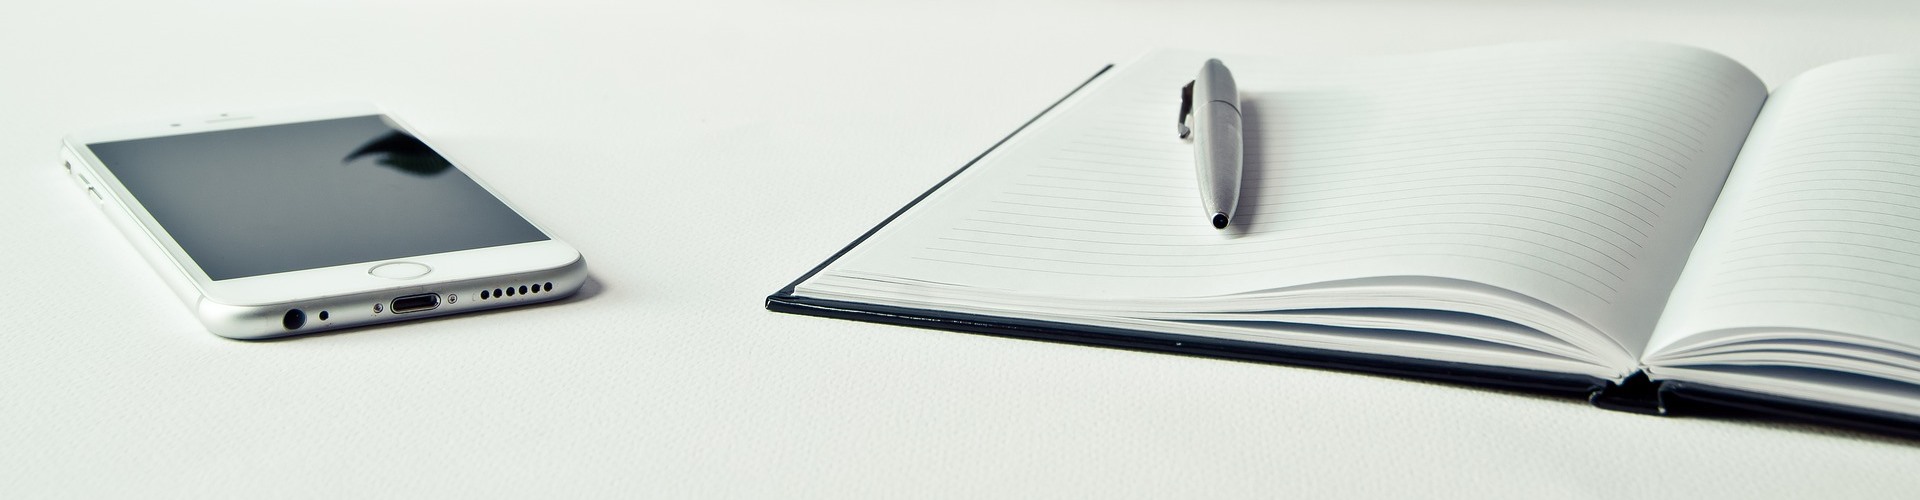 Ein Notizbuch sowie ein Handy liegen auf einer weißen Schreibtischplatte. 